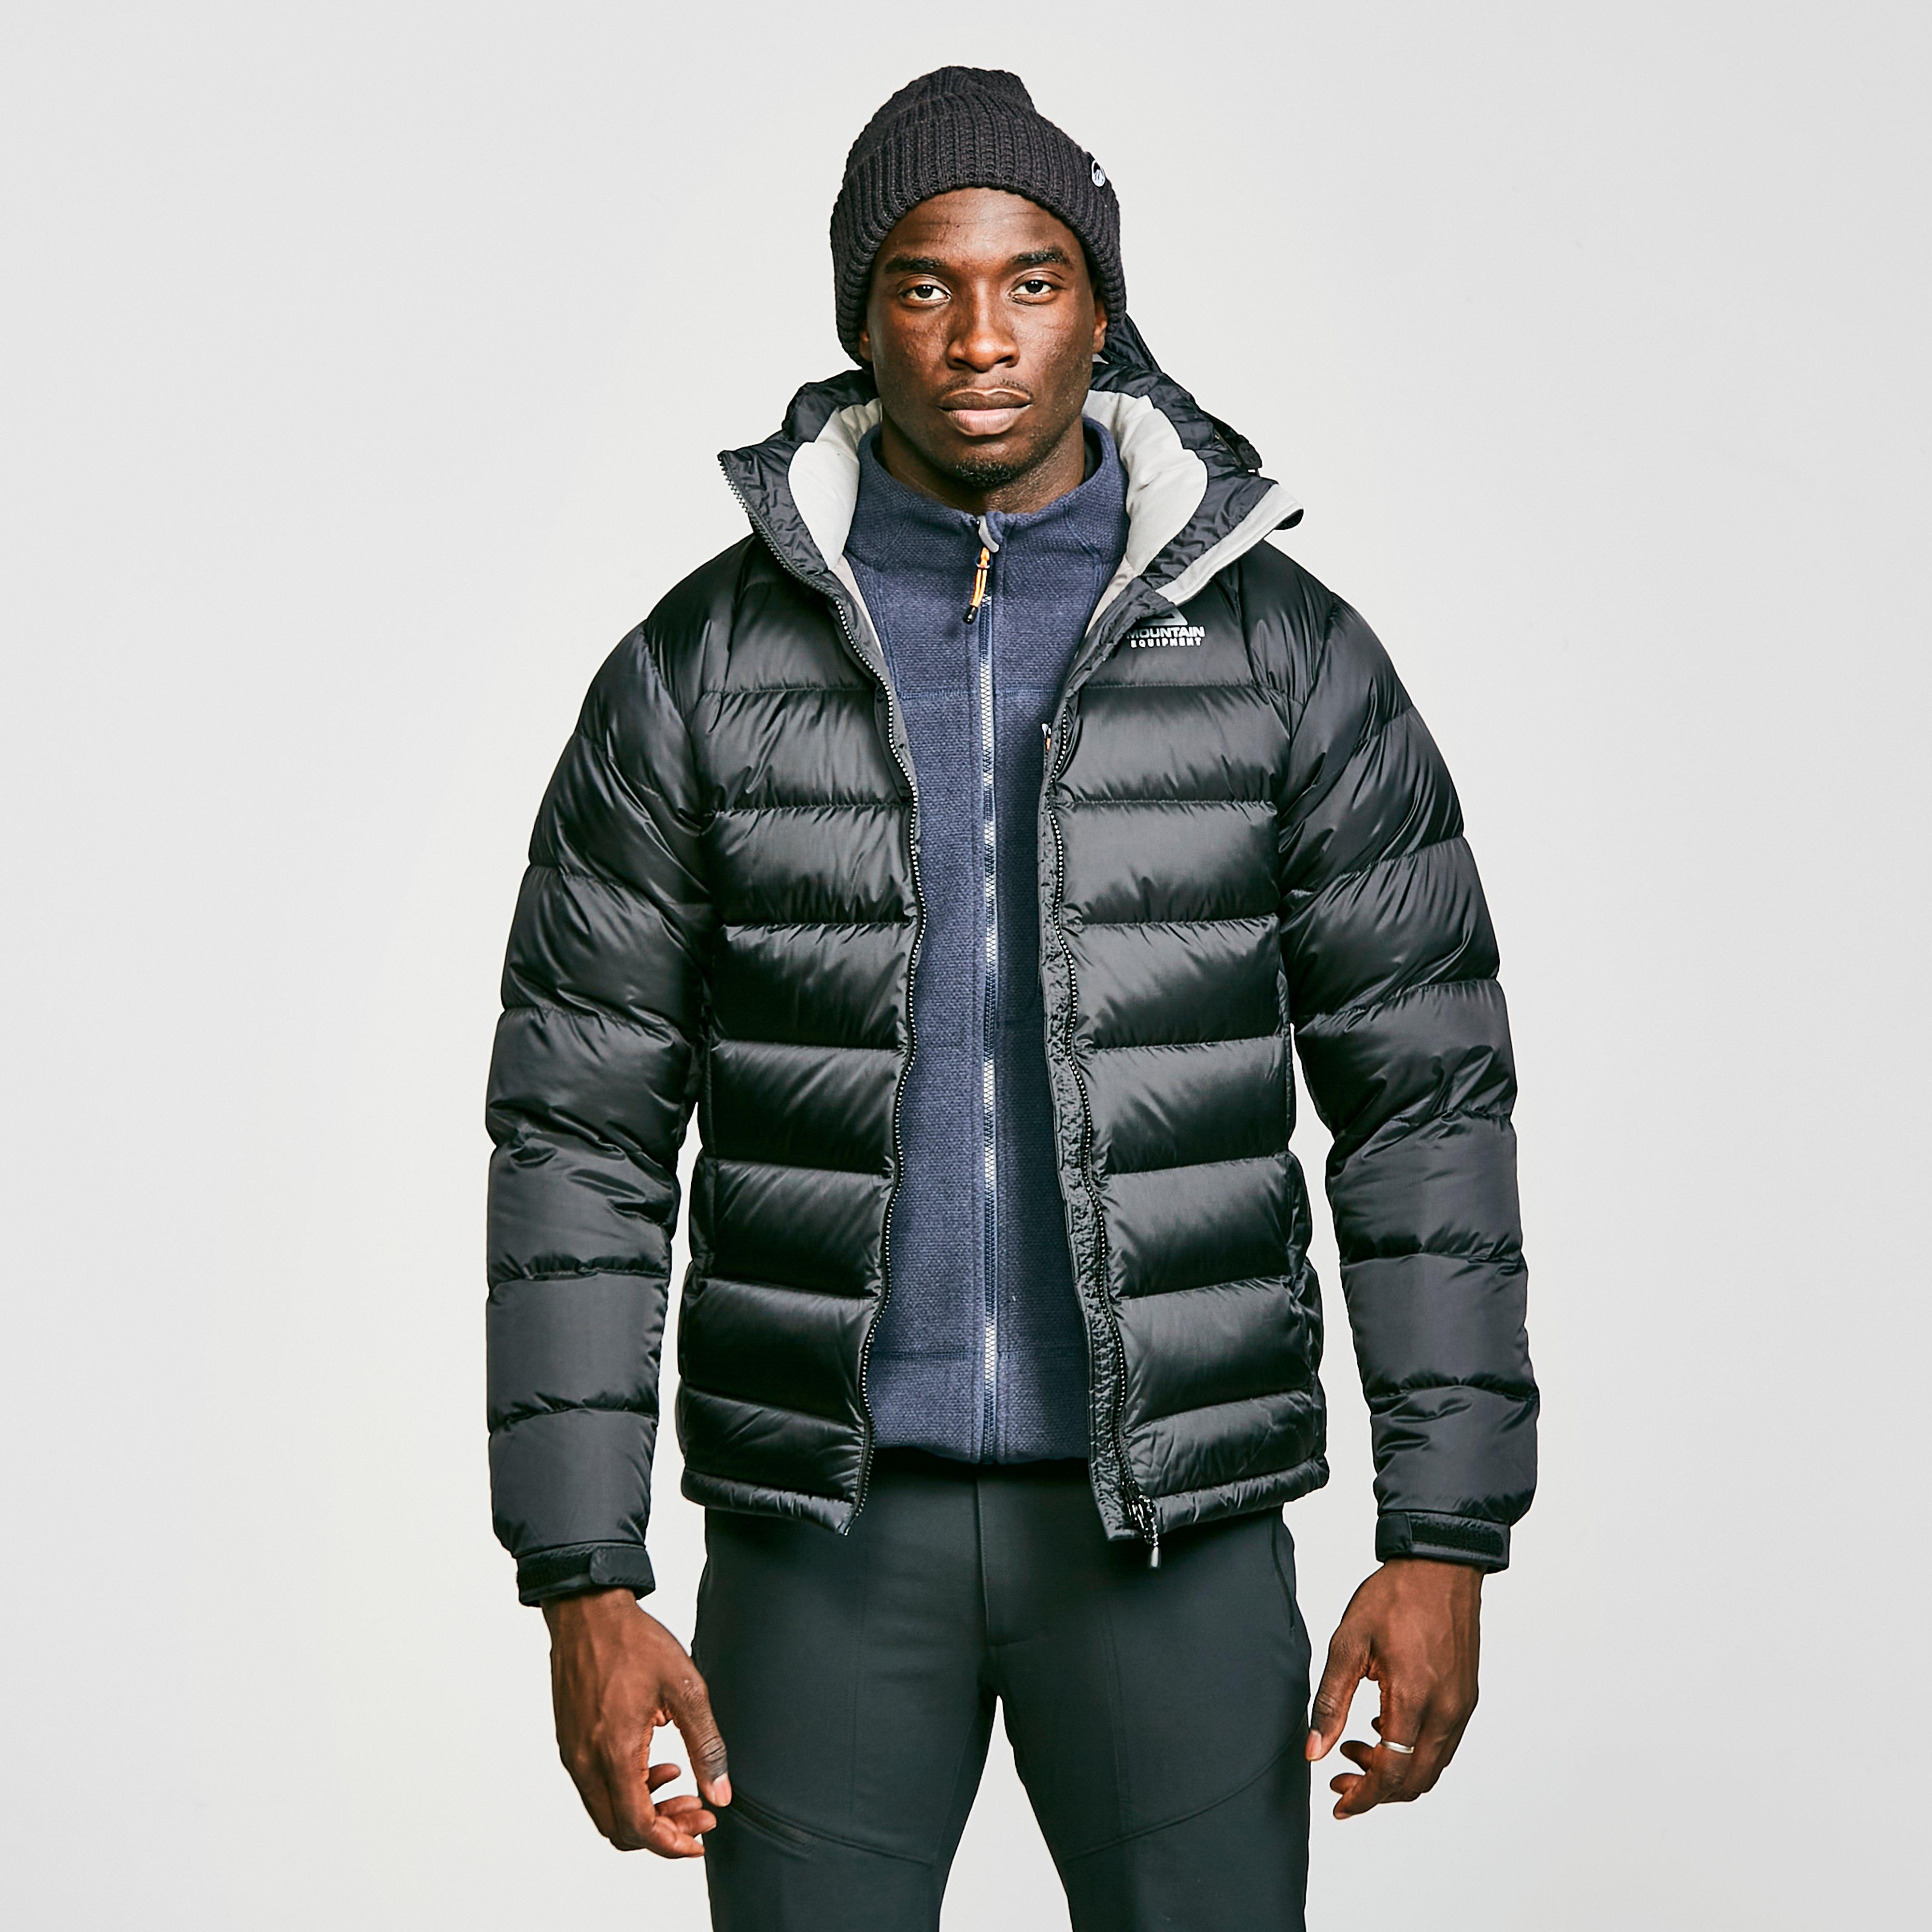 mountain equipment puffer jacket| Enjoy free shipping